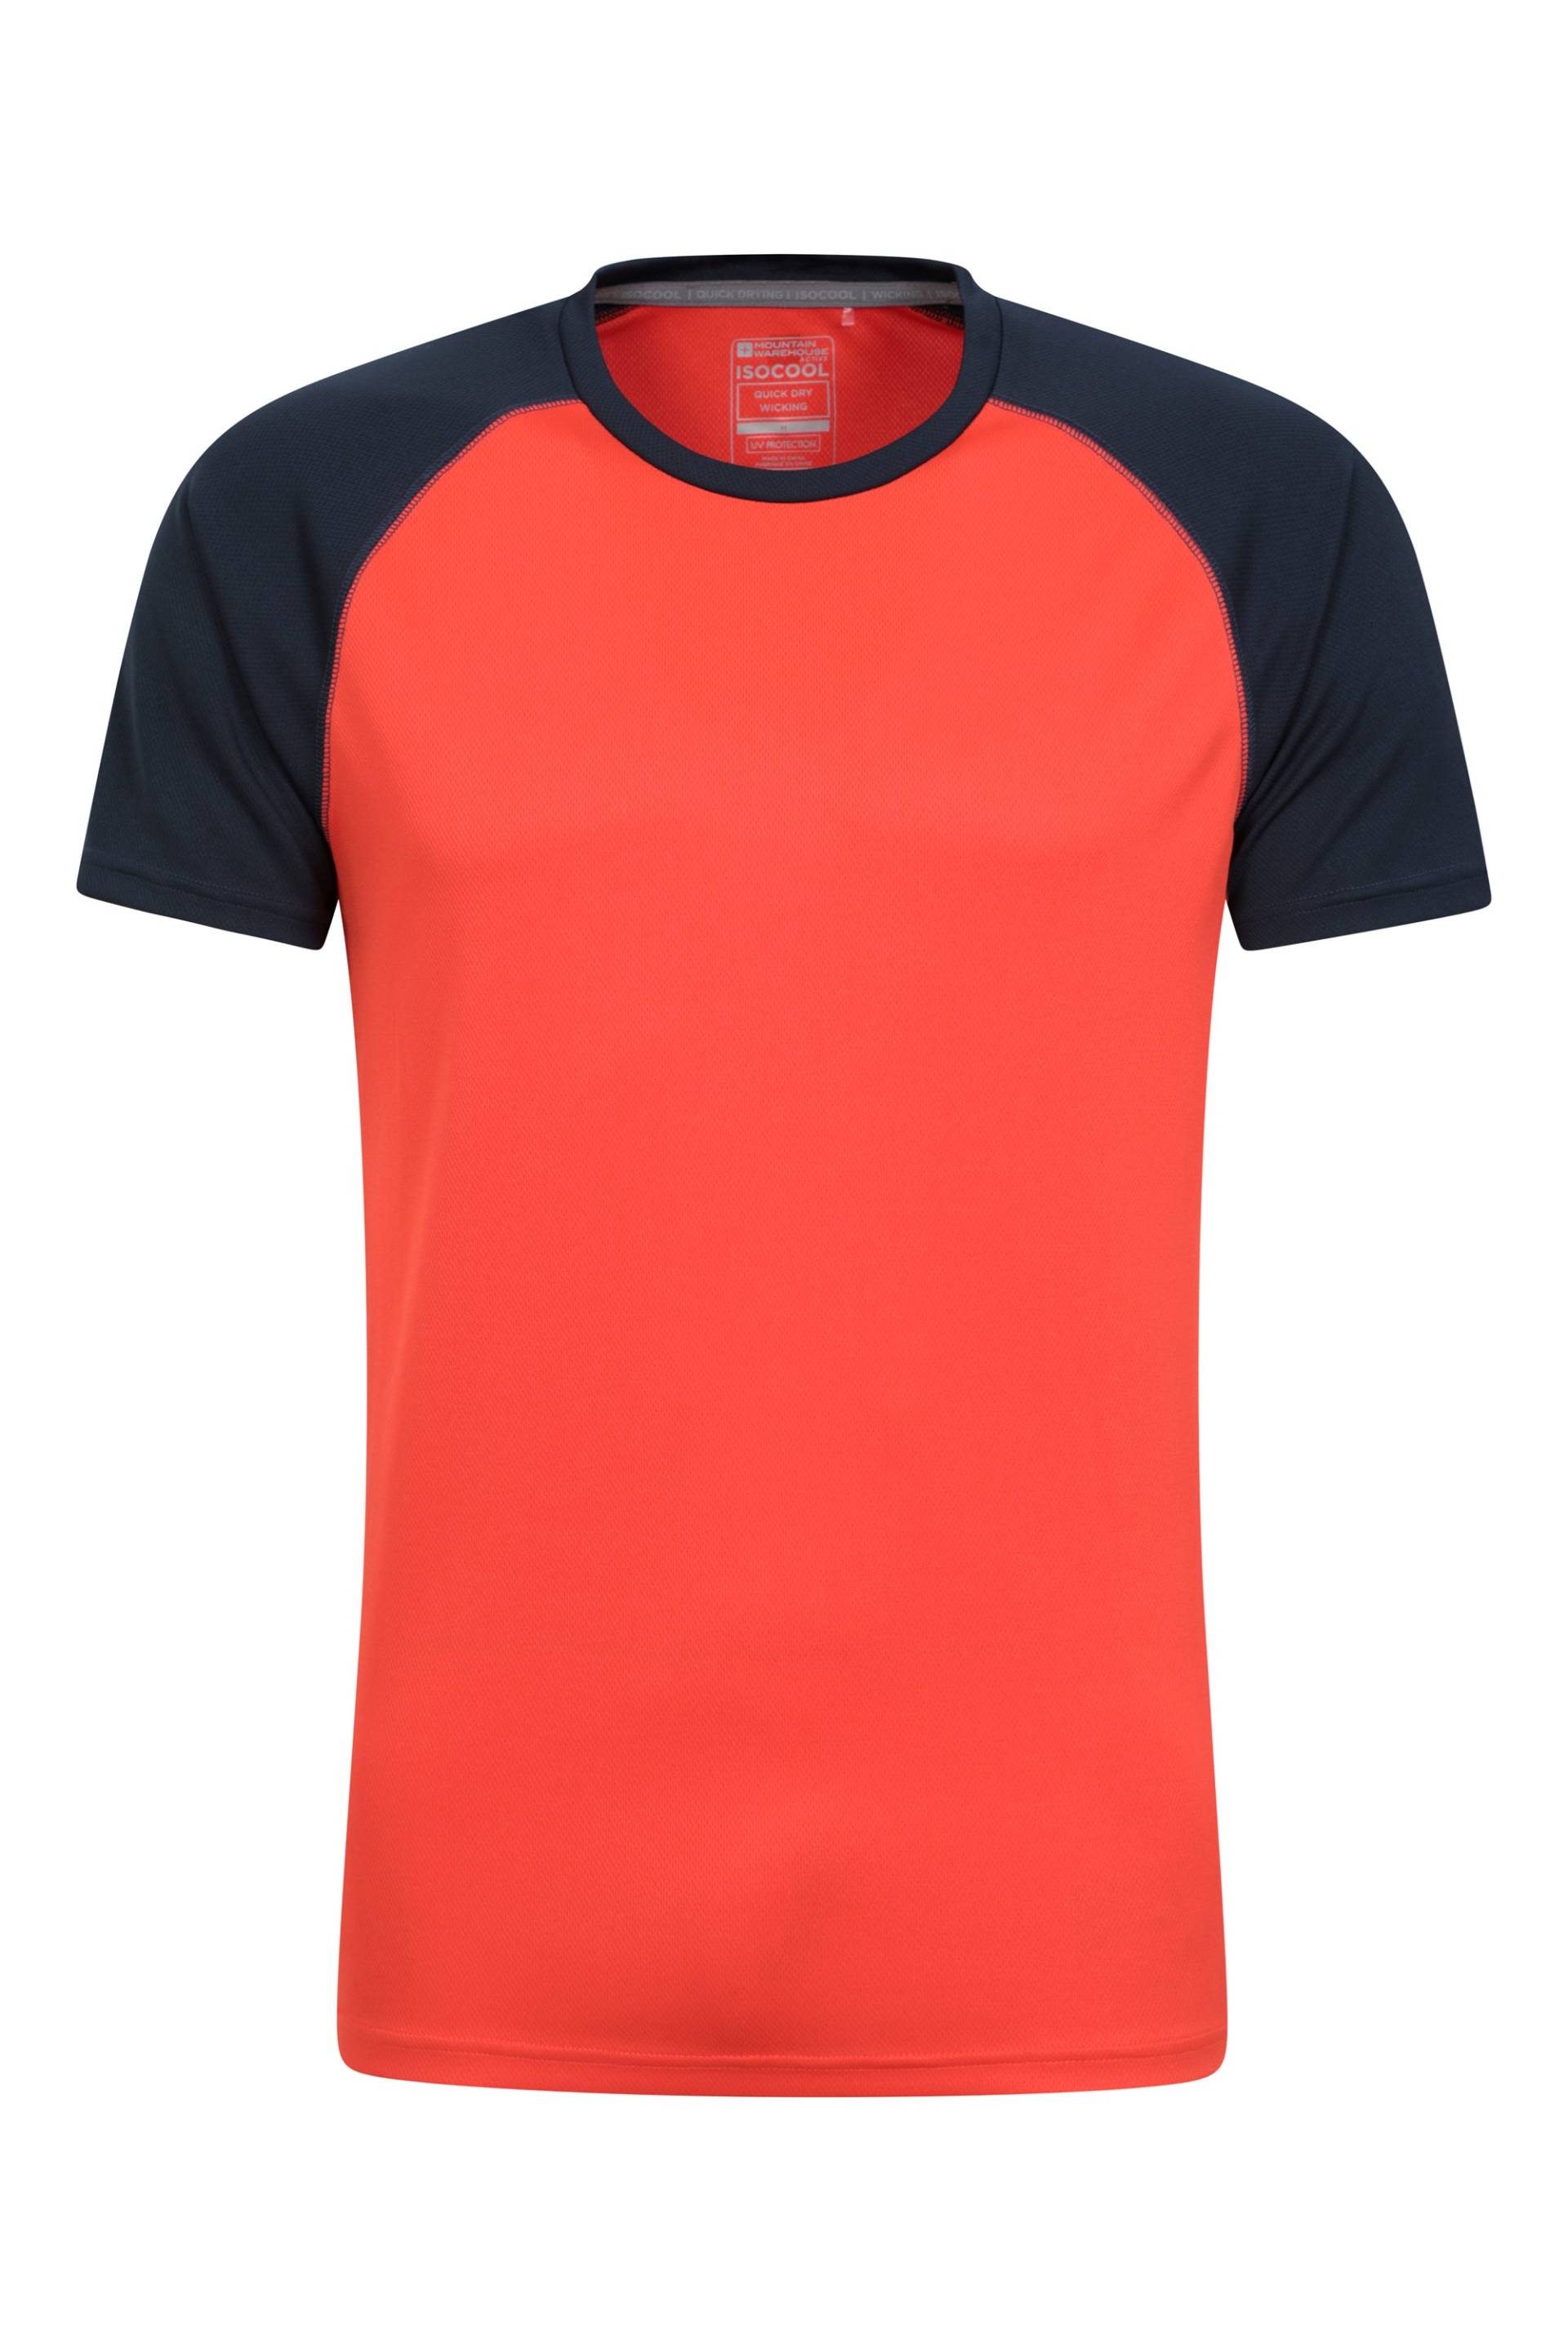 Endurance Herren T-Shirt - Orange von Mountain Warehouse